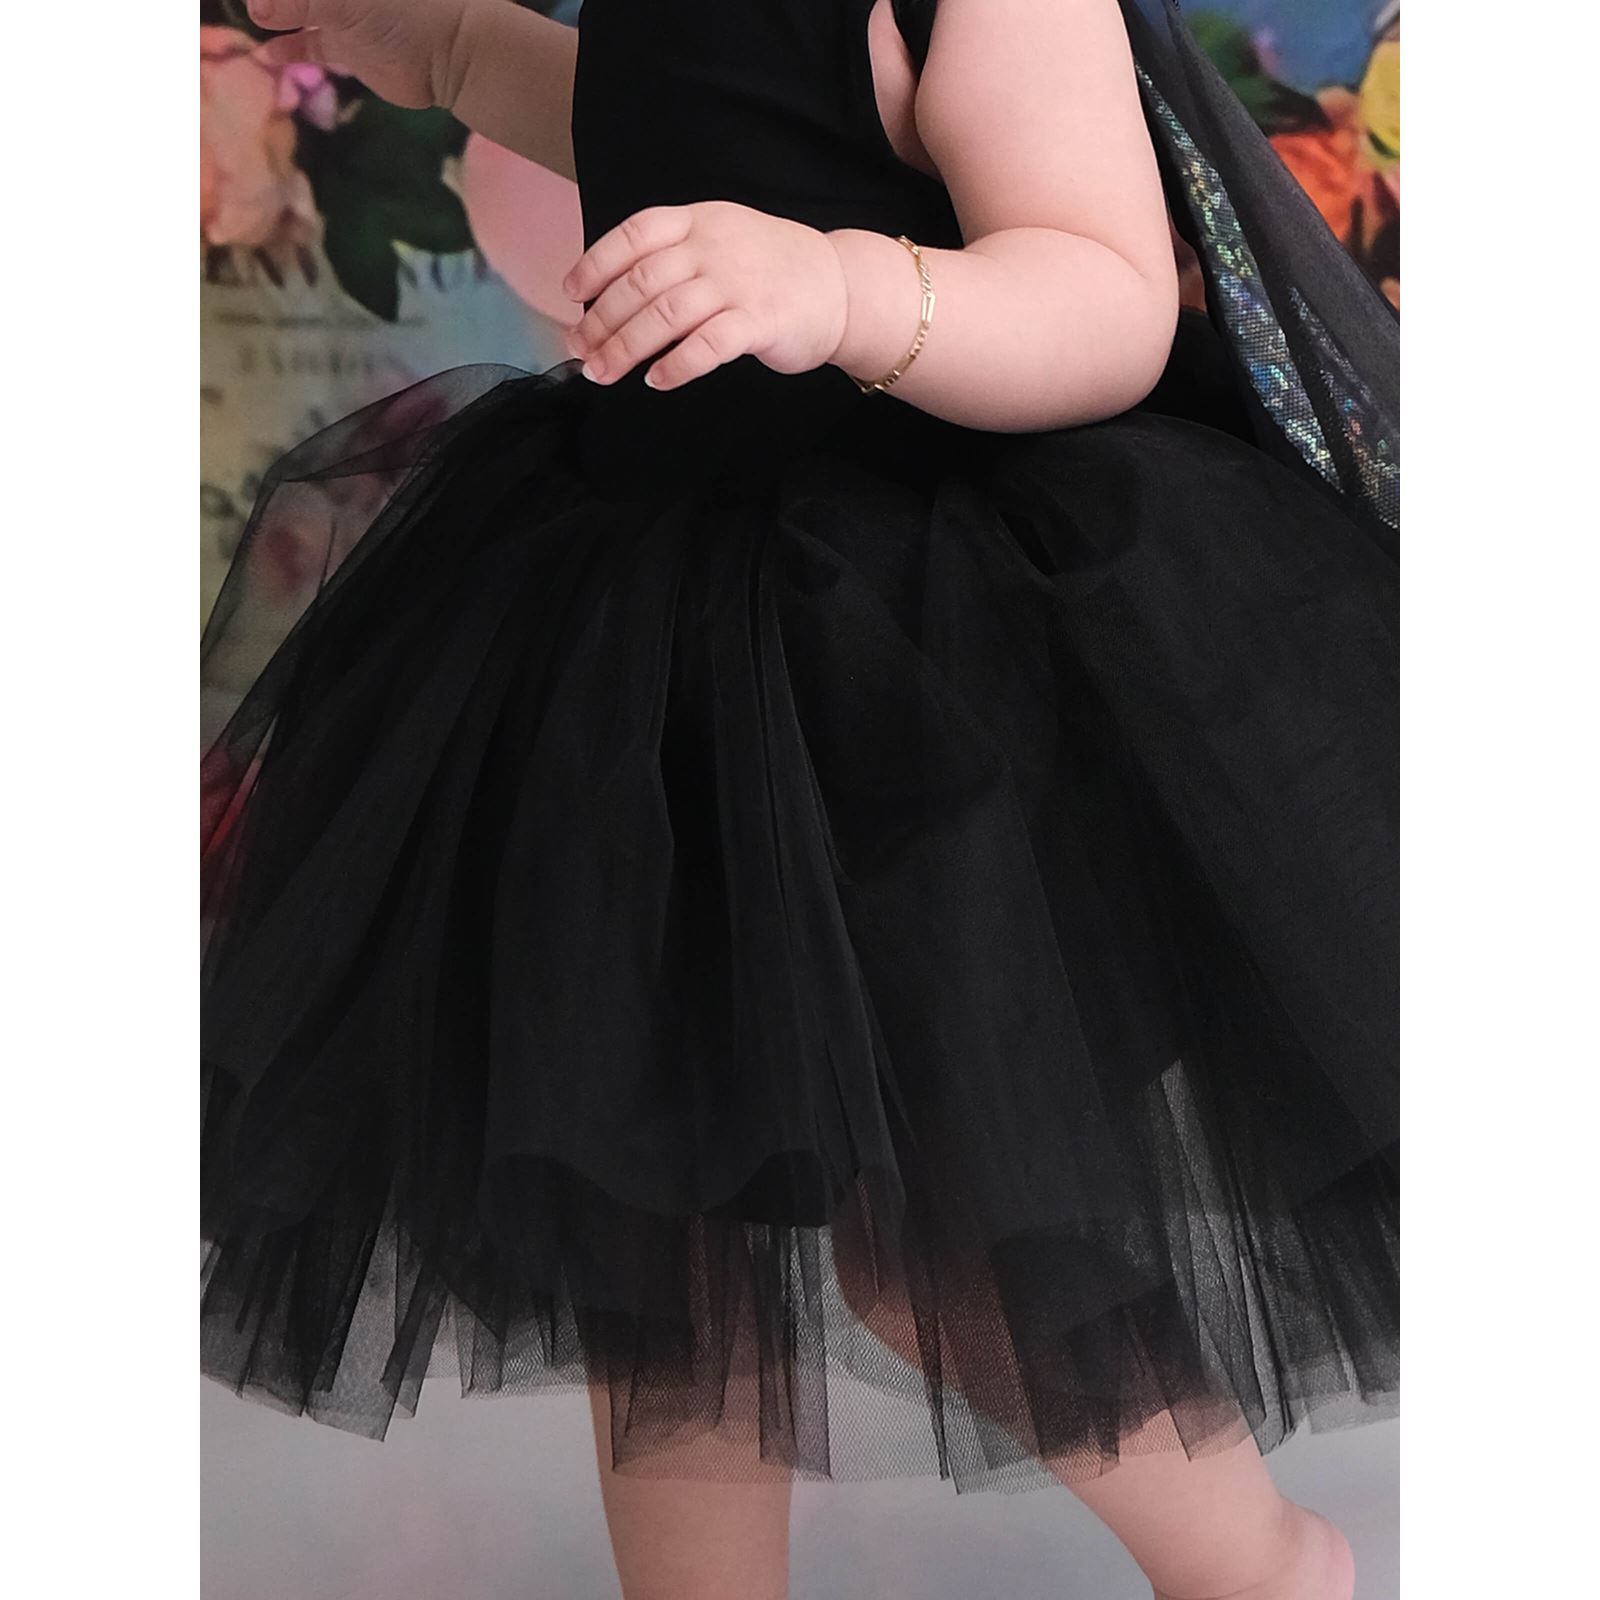 Shecco Babba Balerin Model Kız Çocuk Tütü Elbise, Pon Pon Bandana Takımı - Çocuk Abiye Elbise 6-10 Yaş Abiye Siyah